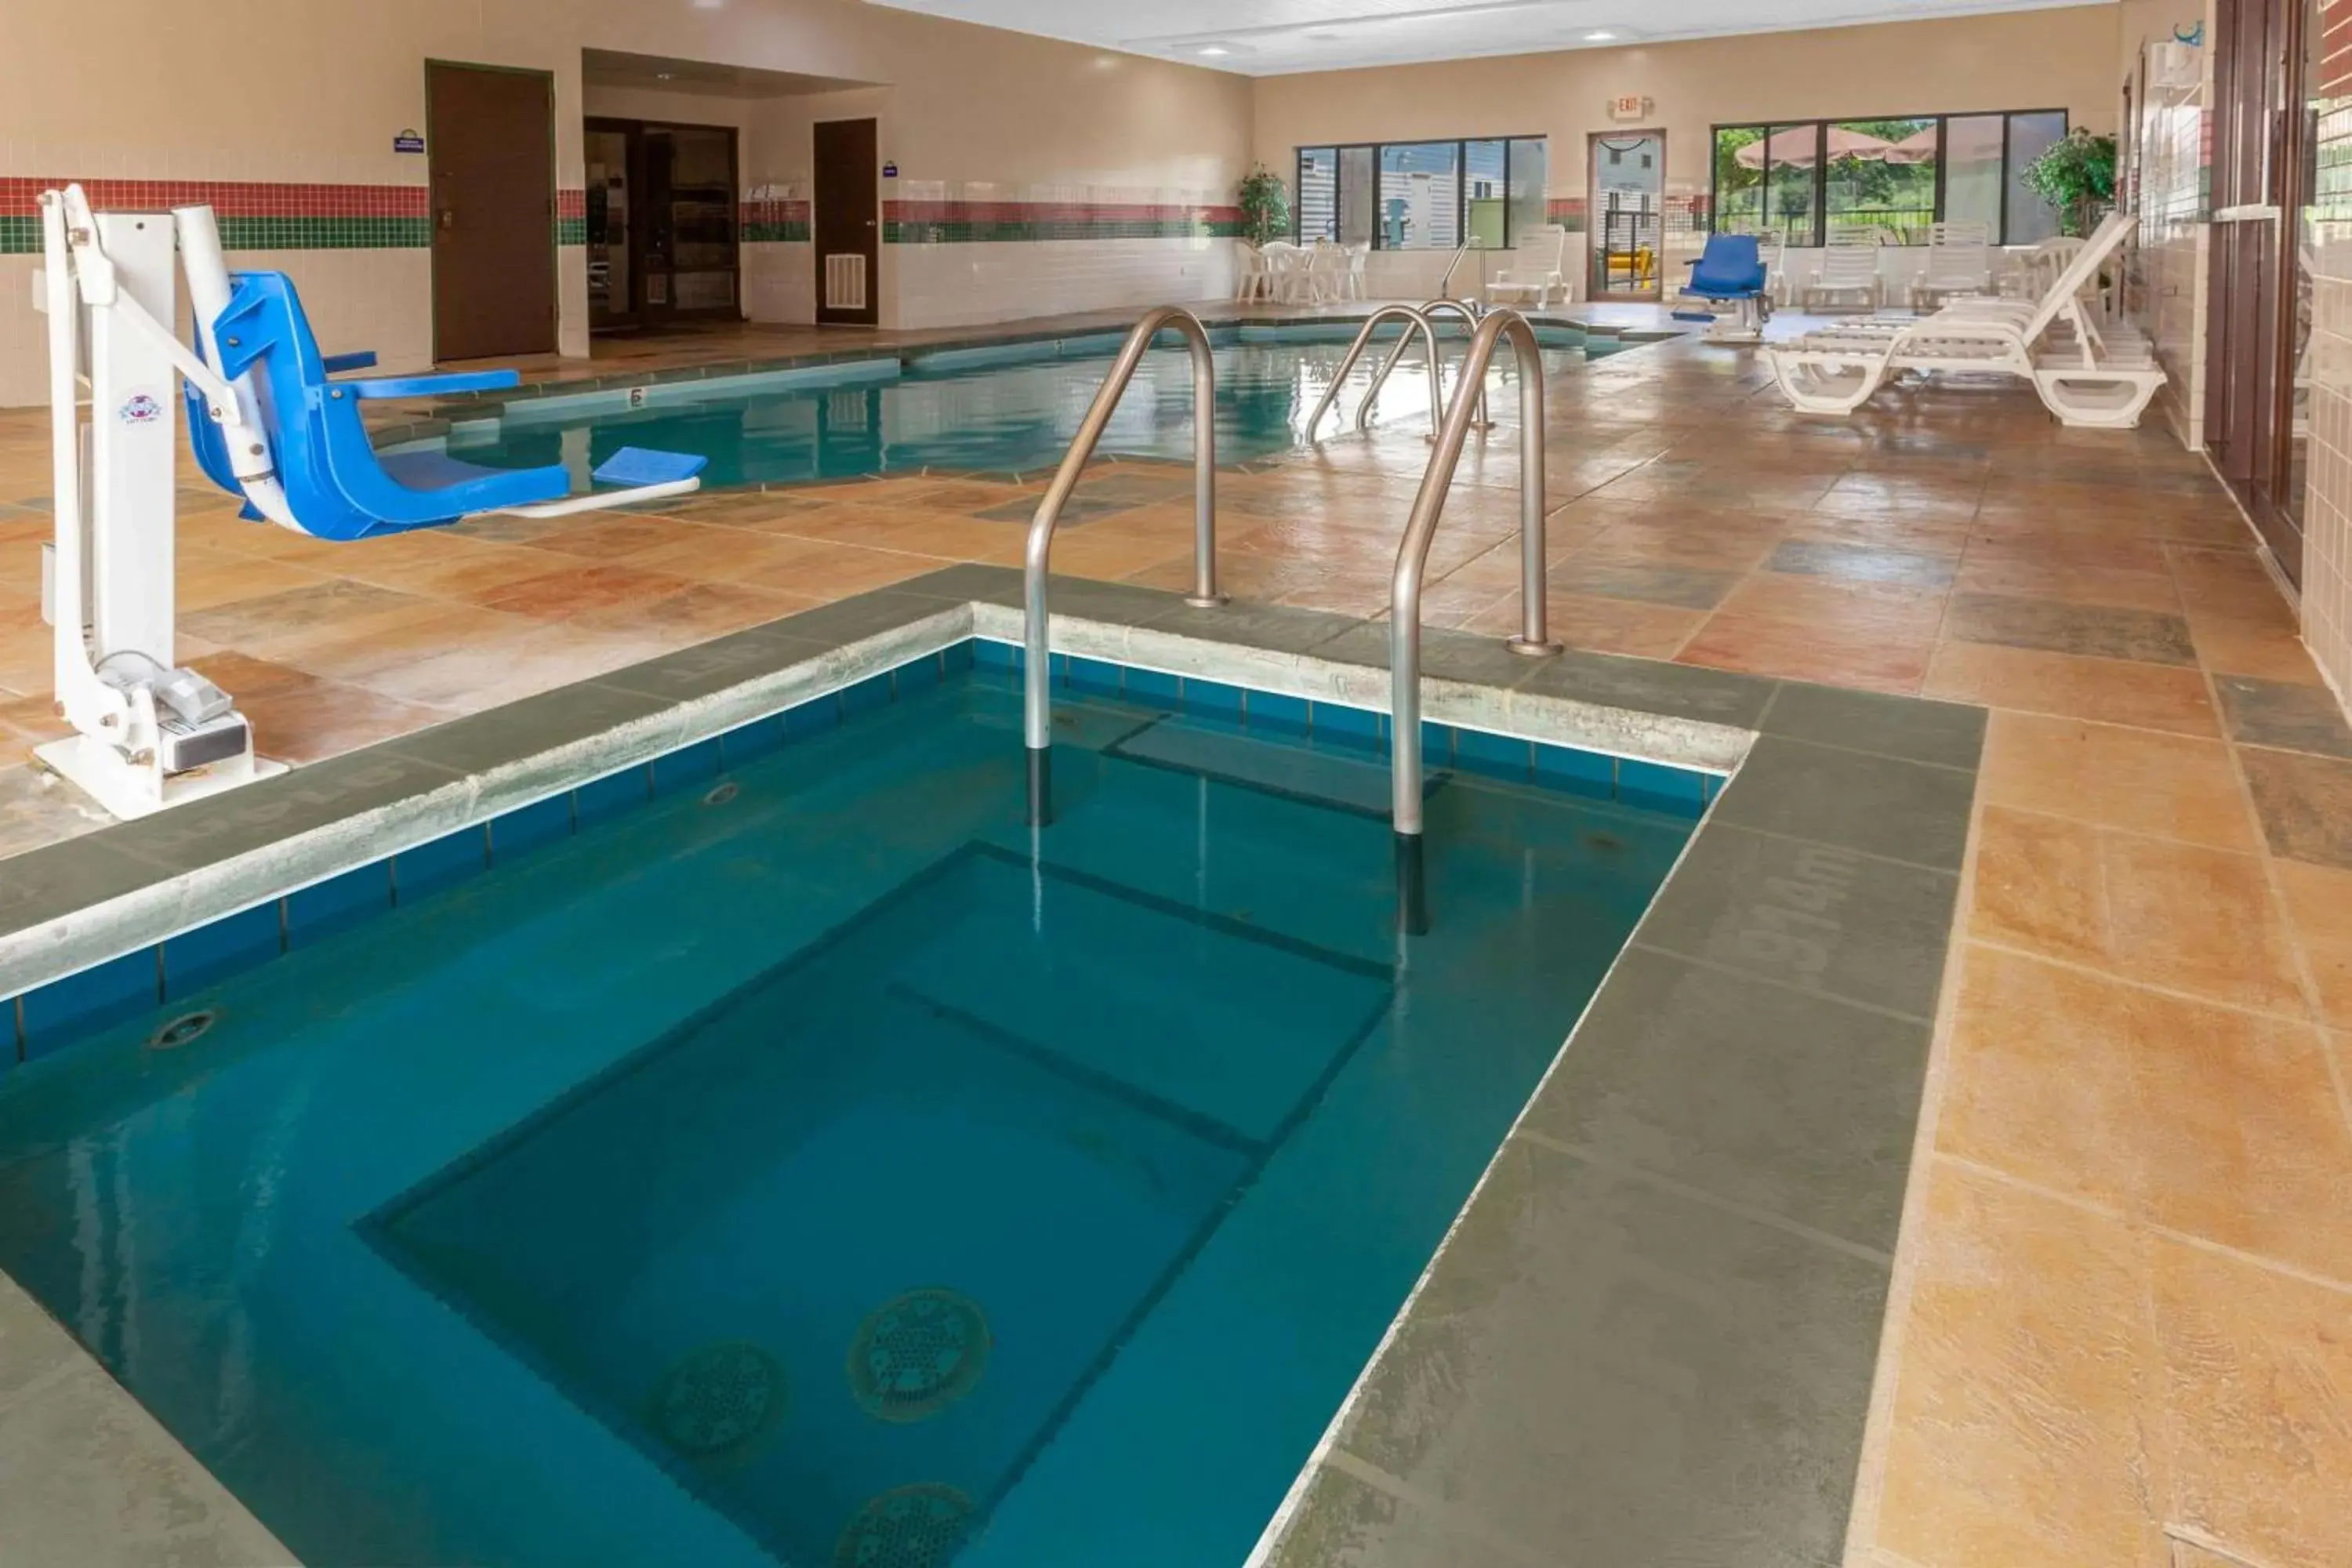 Hot Tub, Swimming Pool in Days Inn by Wyndham Milan Sandusky South